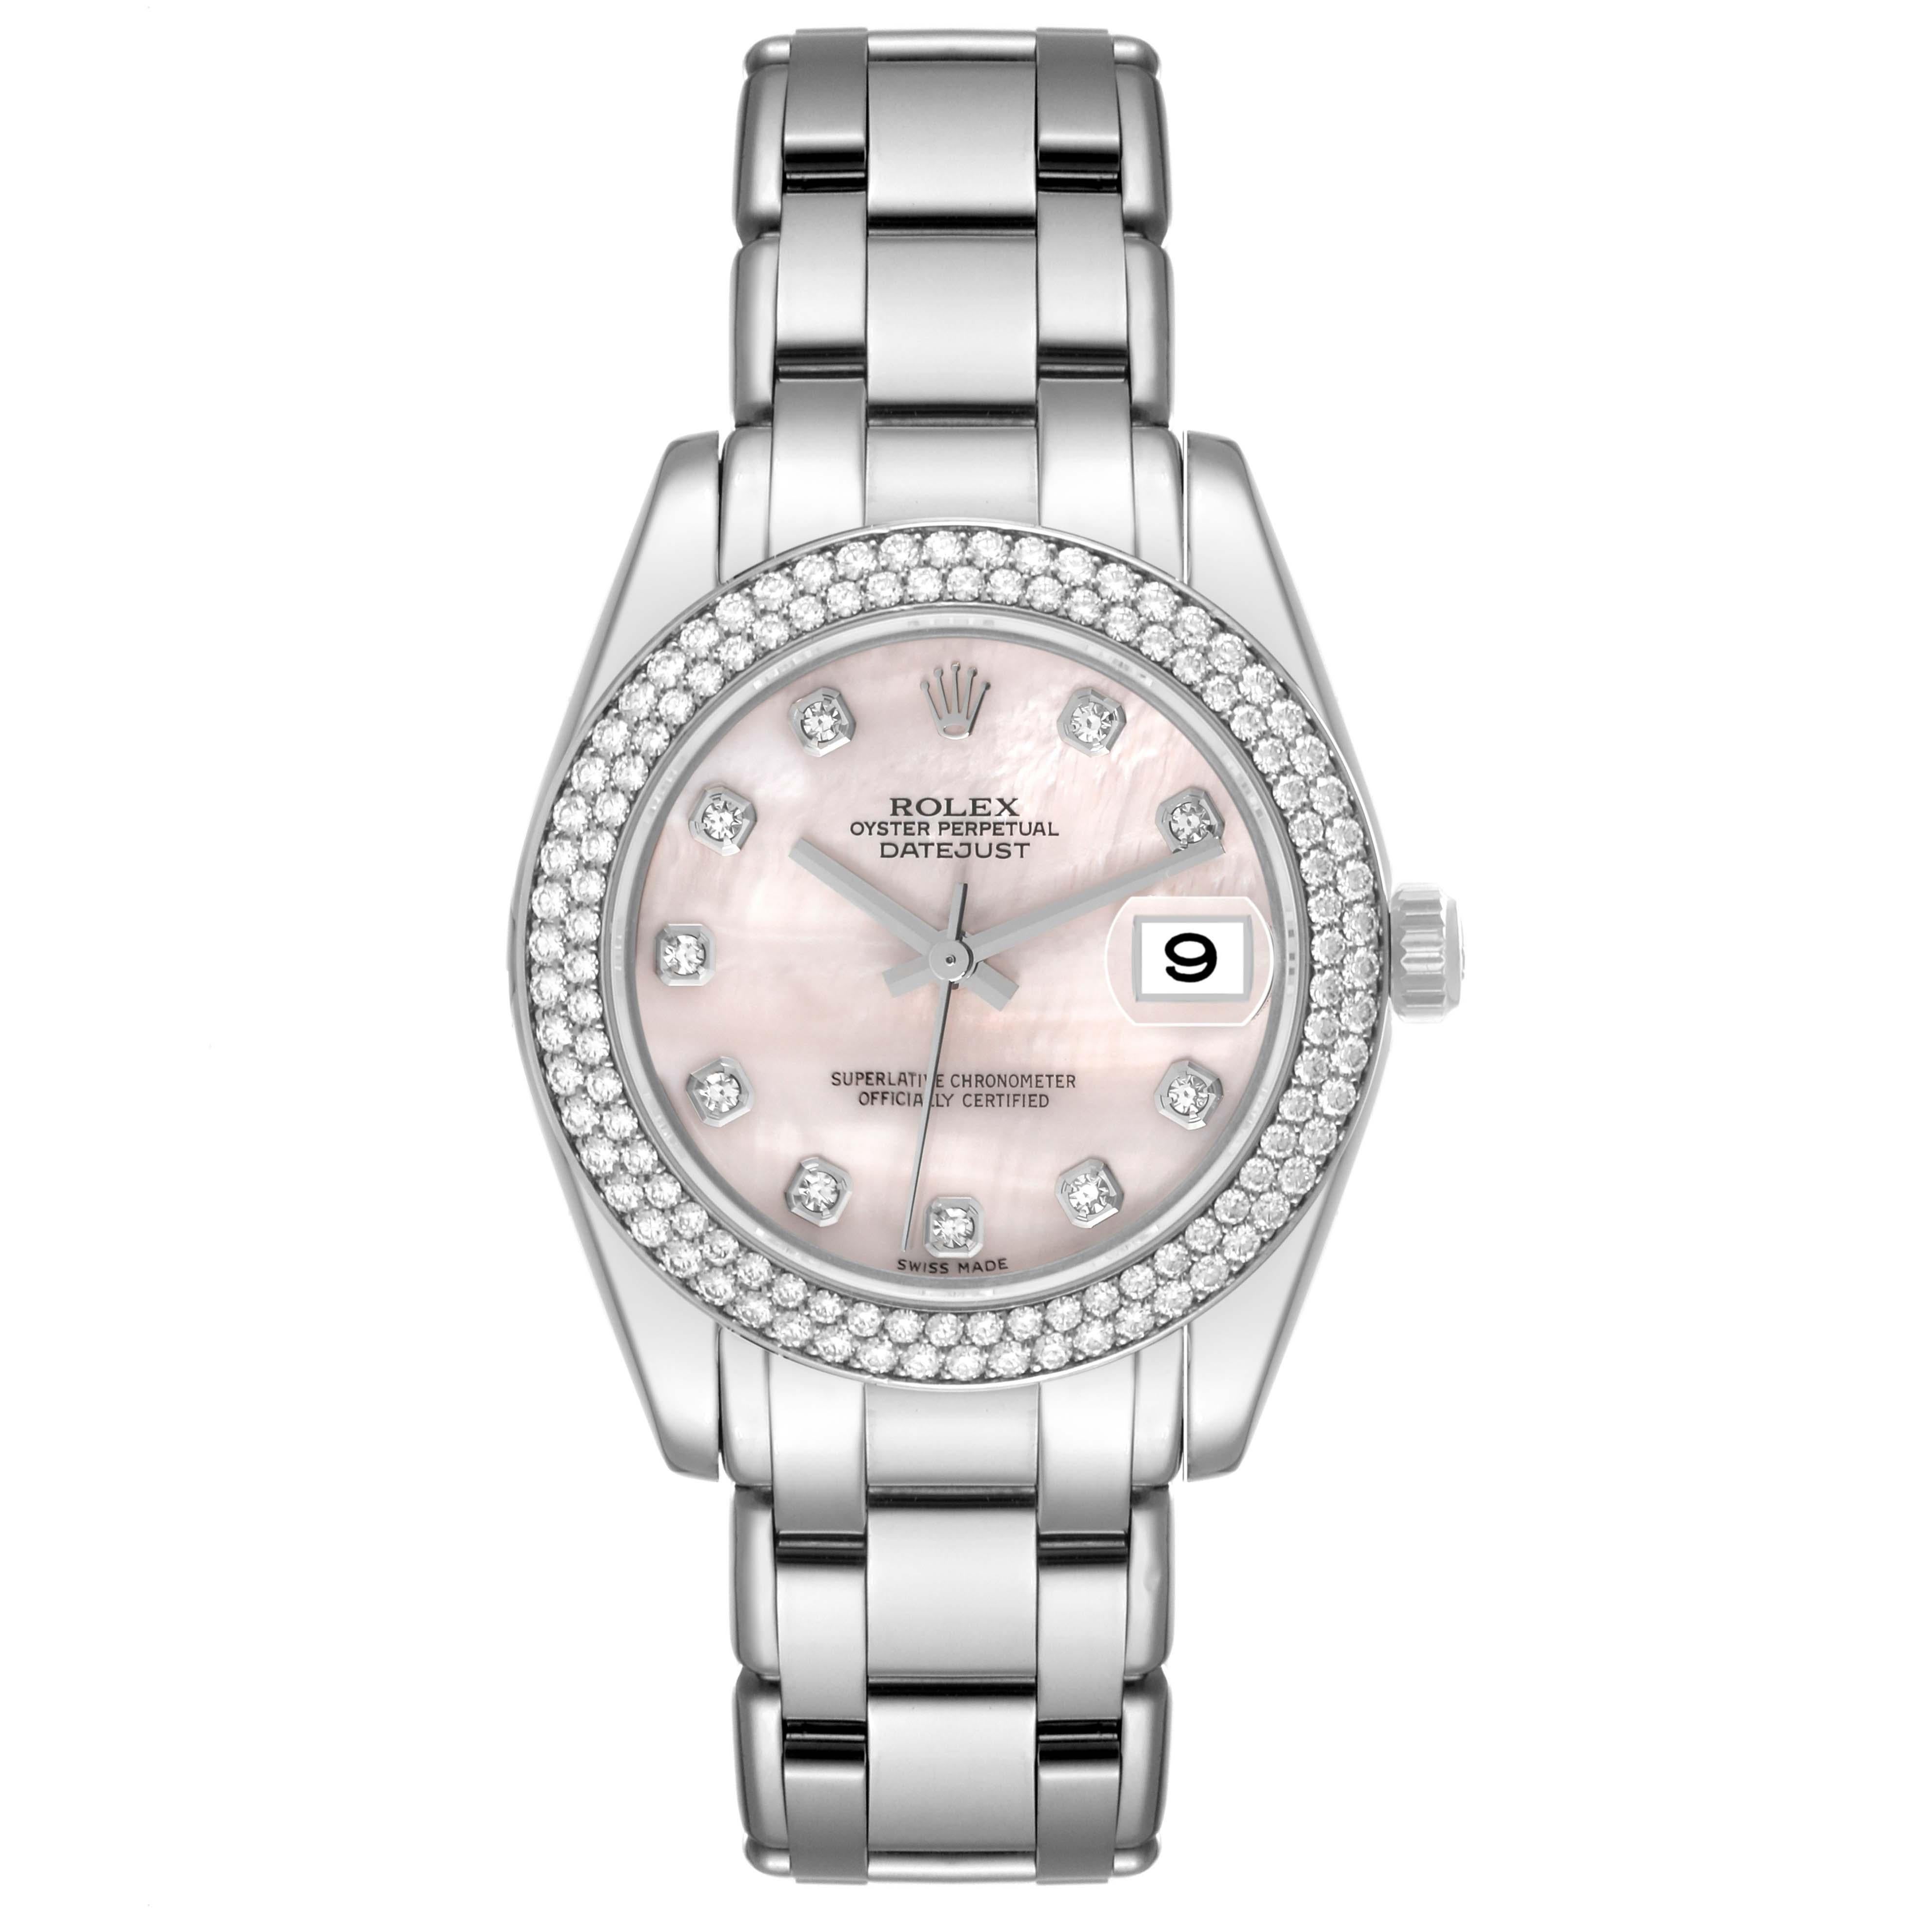 Rolex Pearlmaster 34 or blanc diamant cadran MOP montre femme 81339. Mouvement à remontage automatique officiellement certifié chronomètre. Boîtier en or blanc 18 carats d'un diamètre de 34,0 mm. Logo Rolex sur la couronne. Lunette en diamant